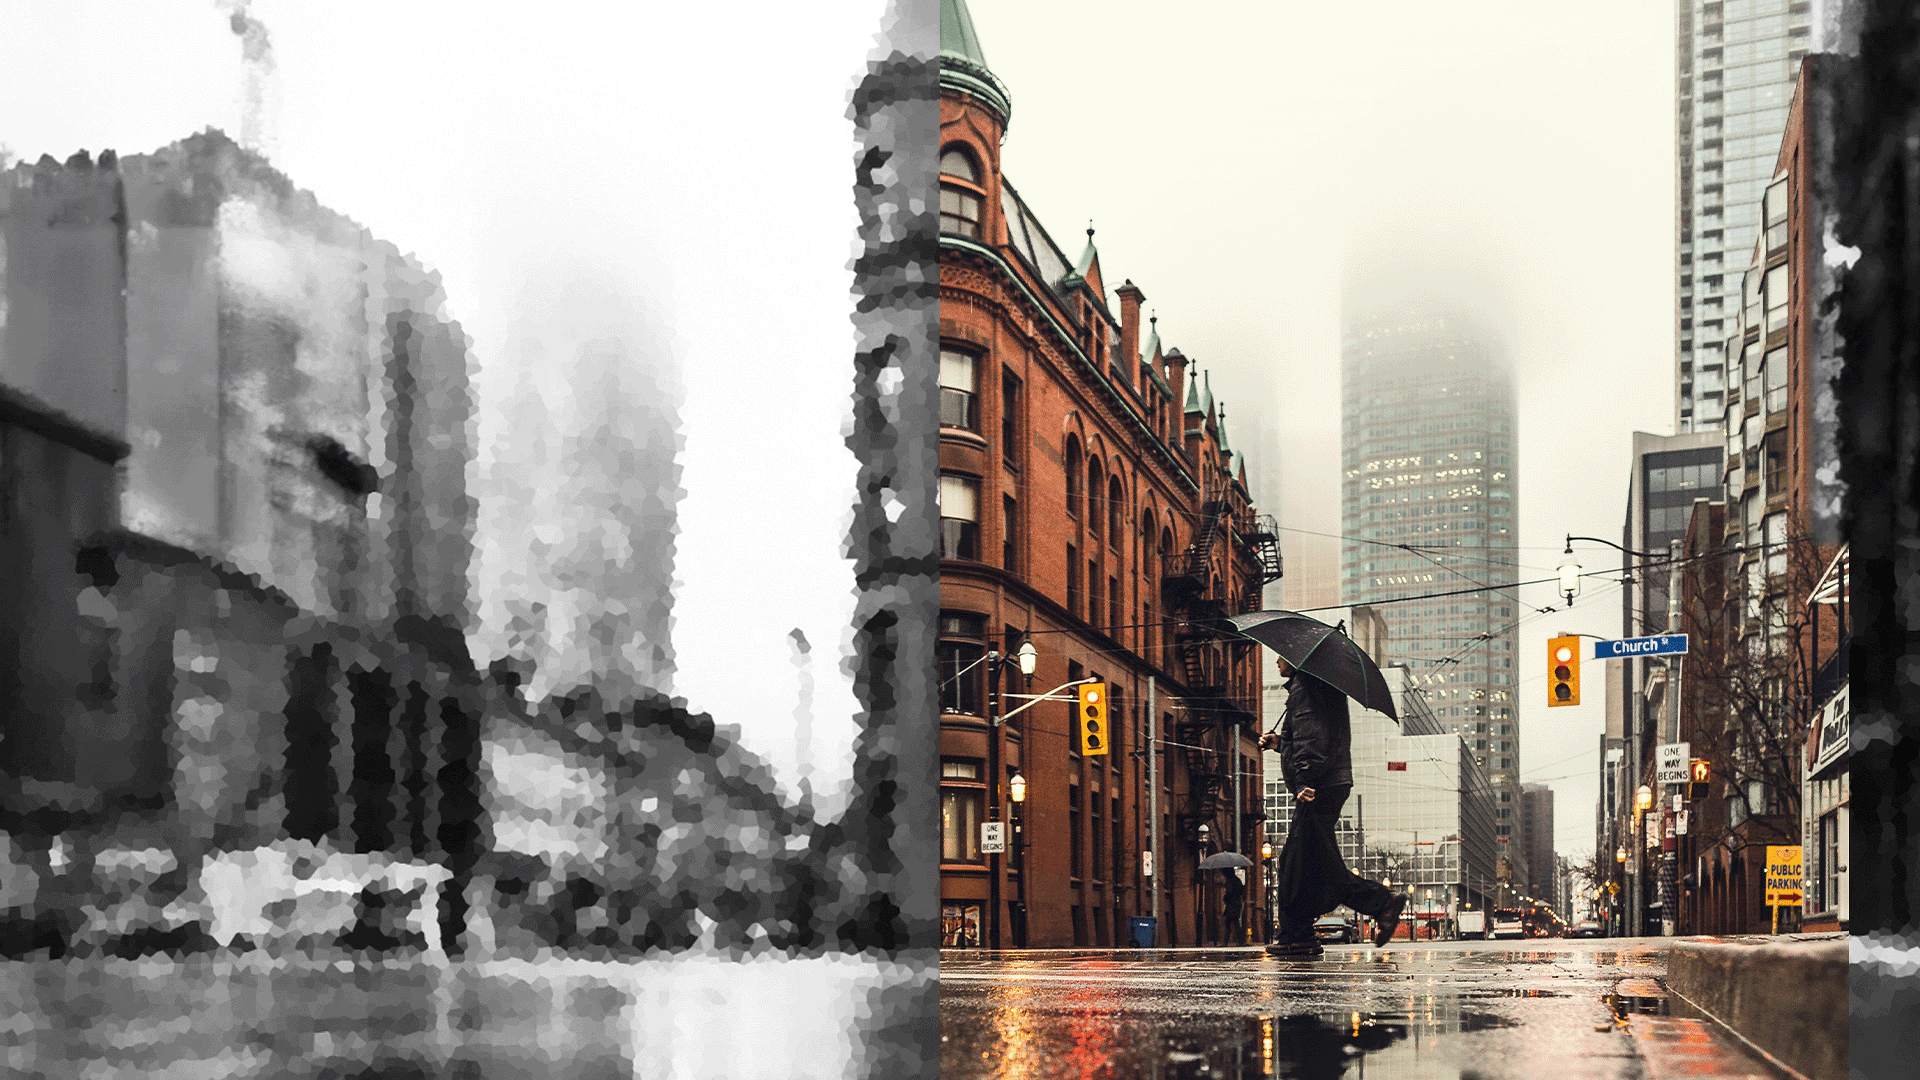 A man crosses a blurry street holding an umbrella